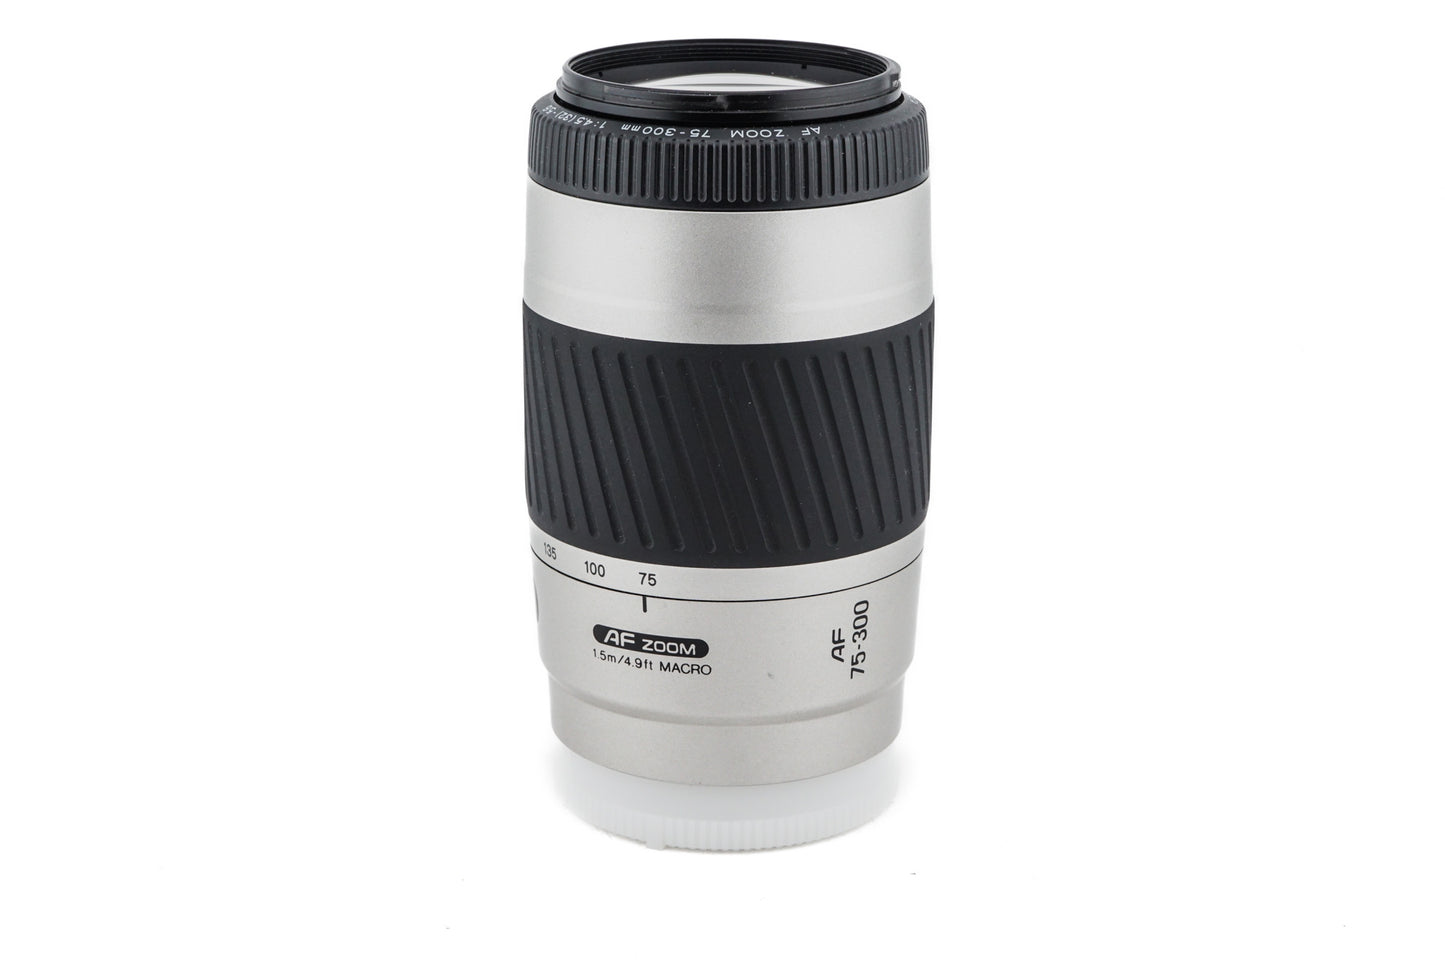 Minolta 75-300mm f4.5-5.6 AF Zoom - Lens